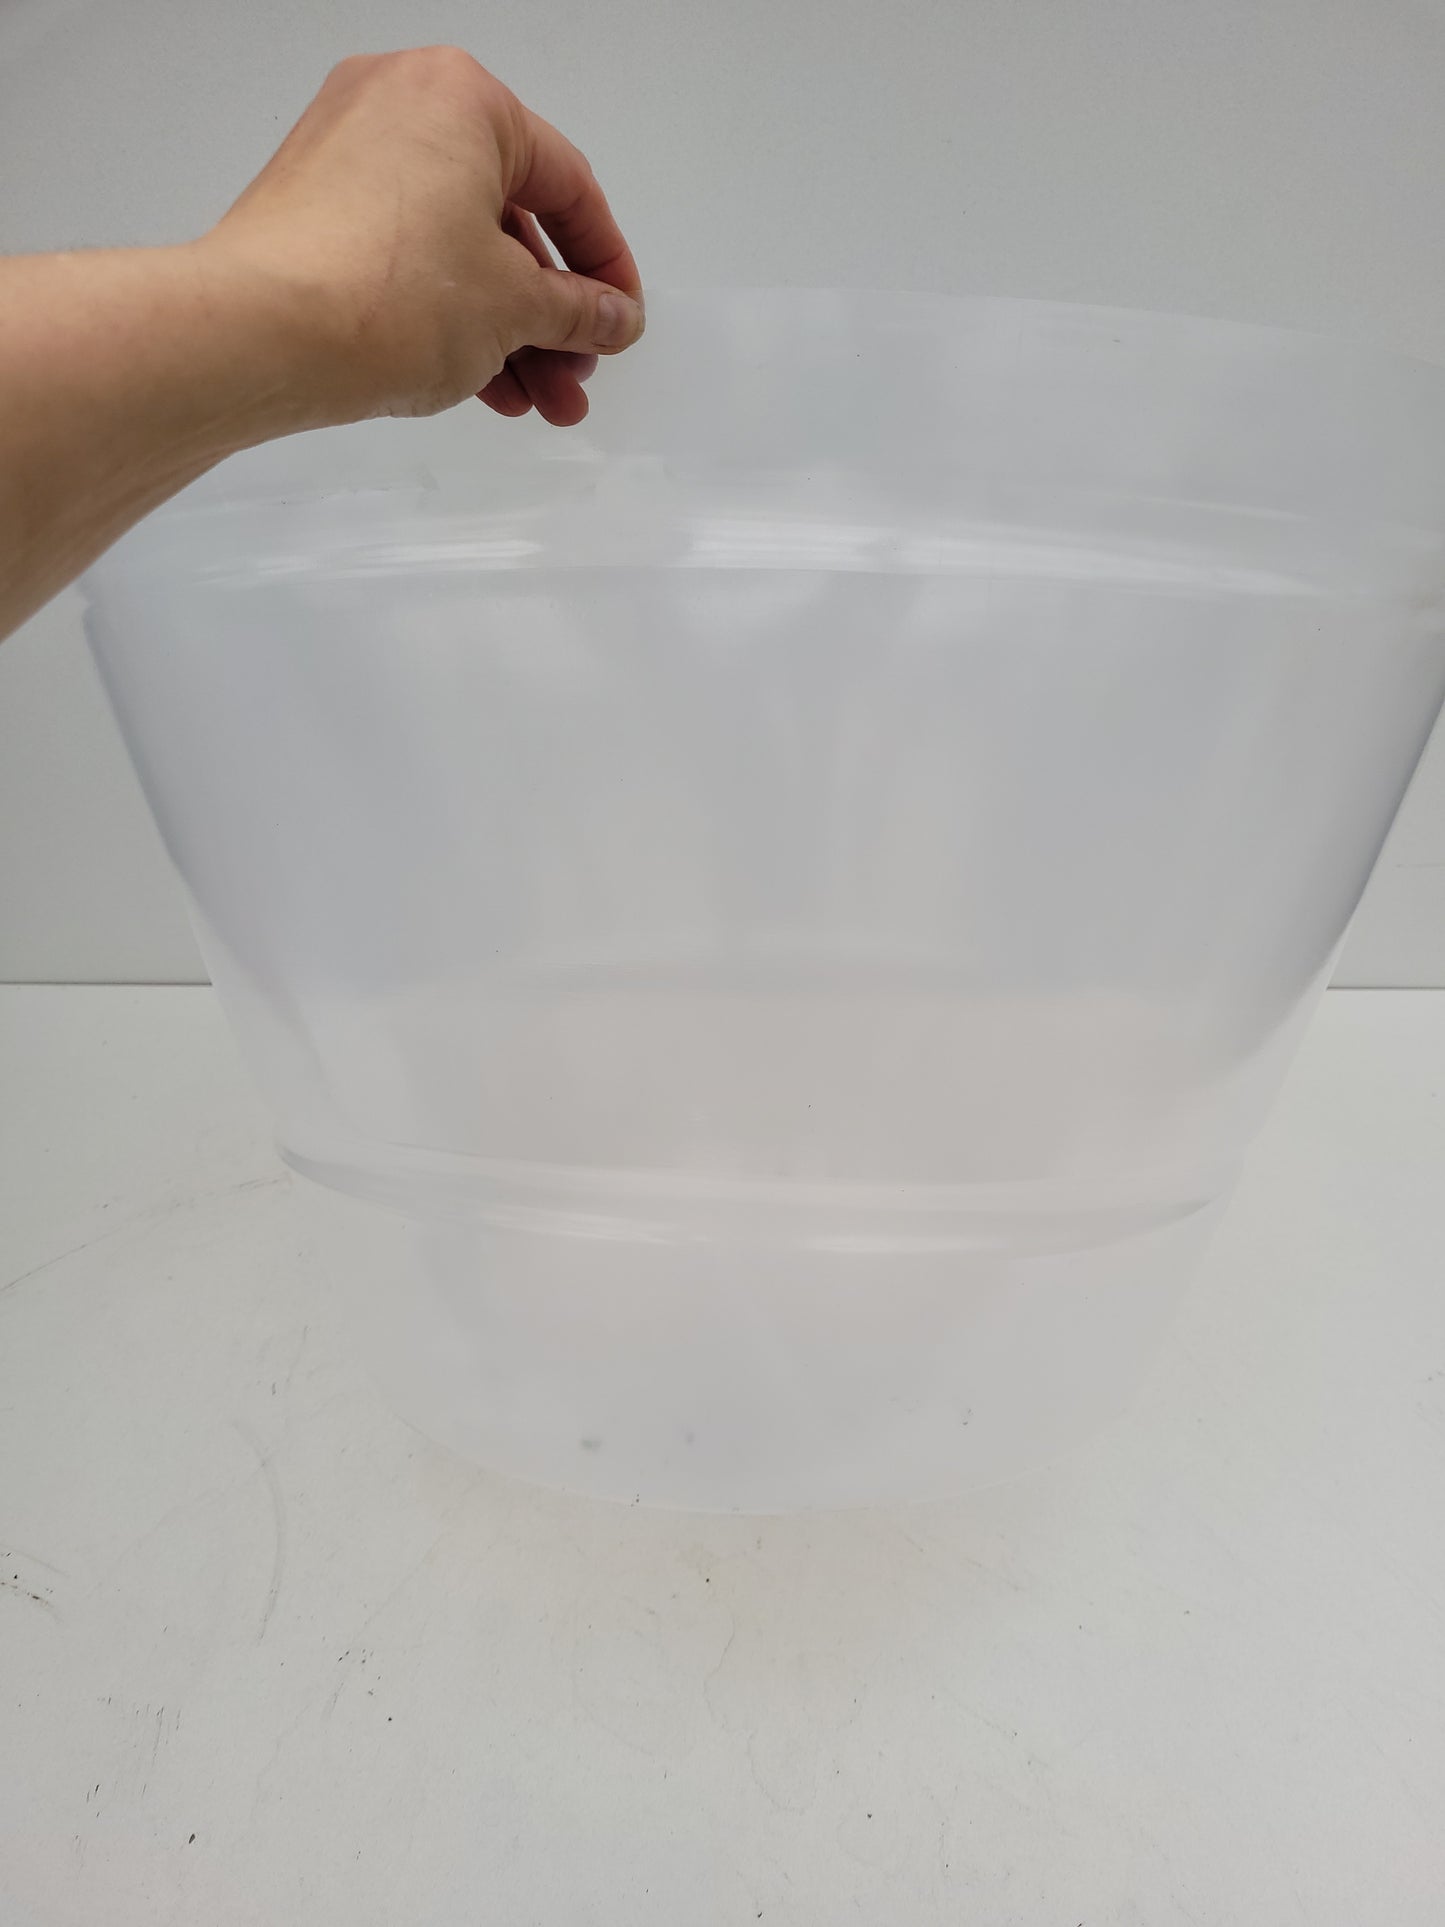 Plastpotte 50 cm i diameter  myk